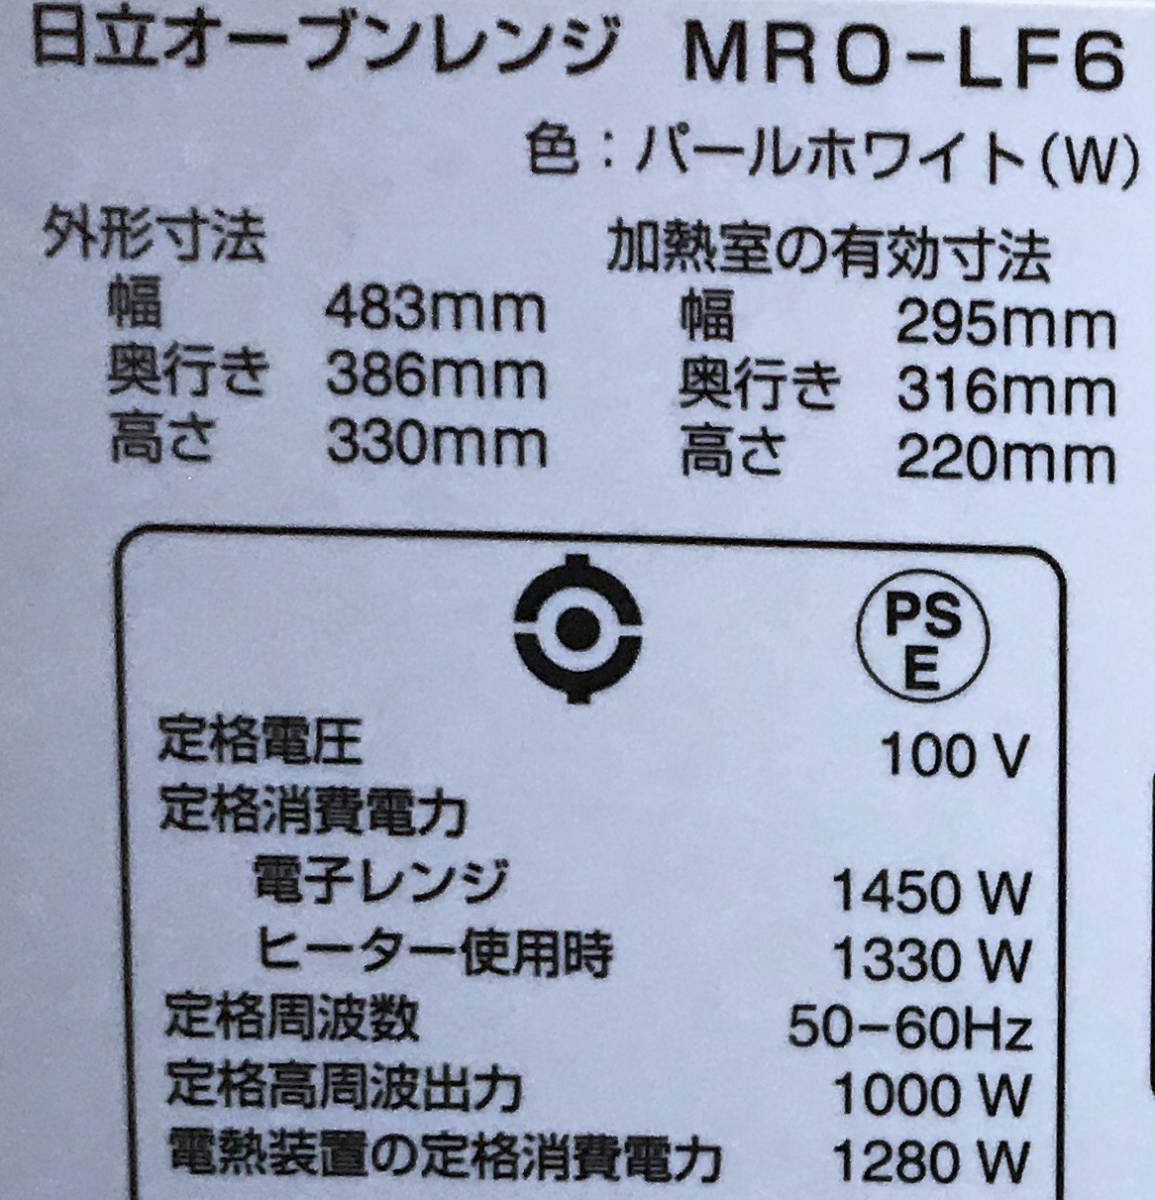 [MRO-LF6* стоит посмотреть ] Hitachi * compact широкий PAM* угол тарелка конвекционно-паровая печь * исправно работающий товар!